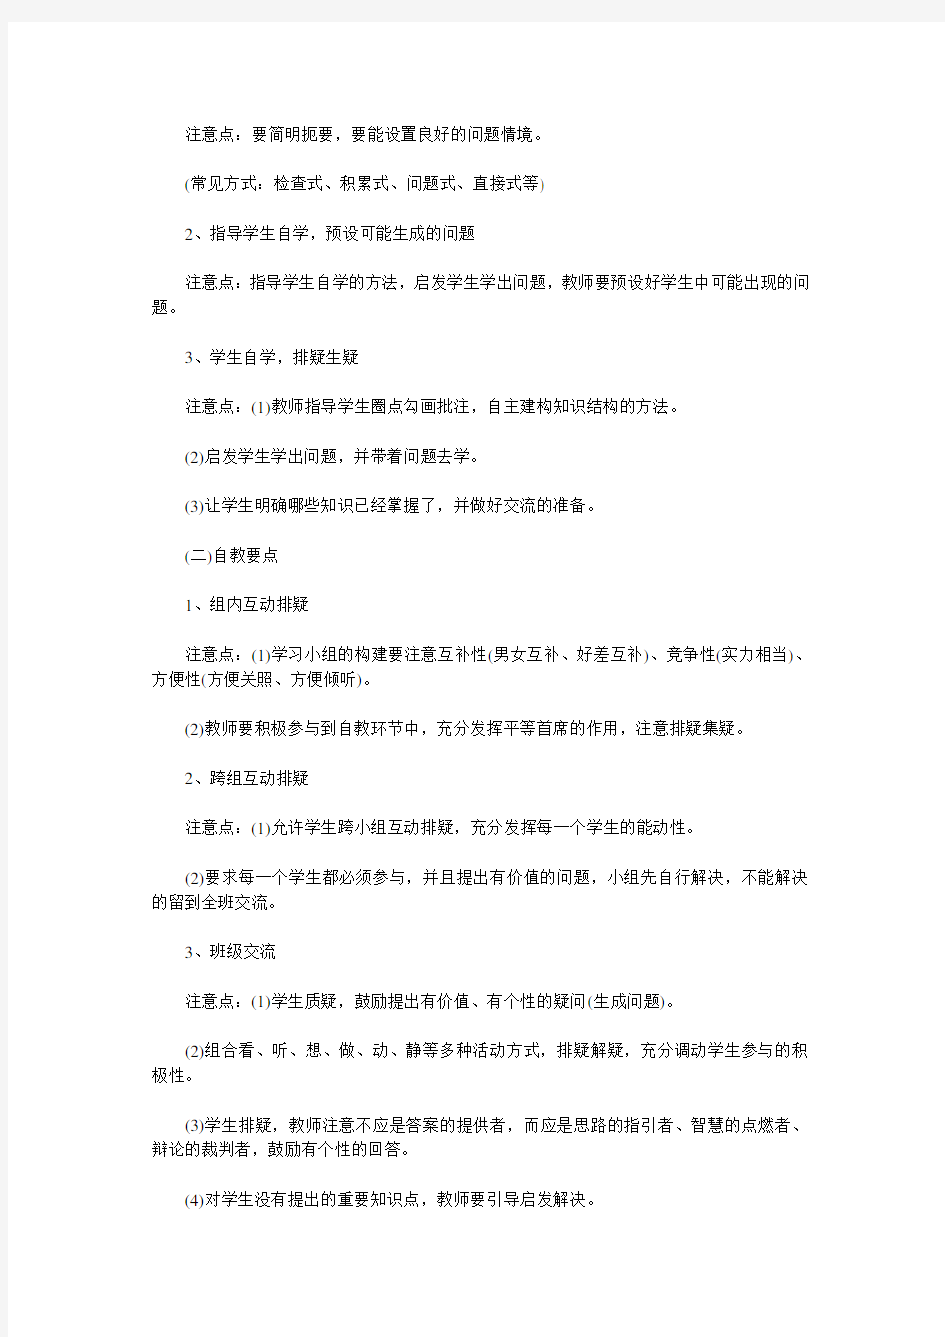 初中语文教师教学行为规范(征求意见稿)